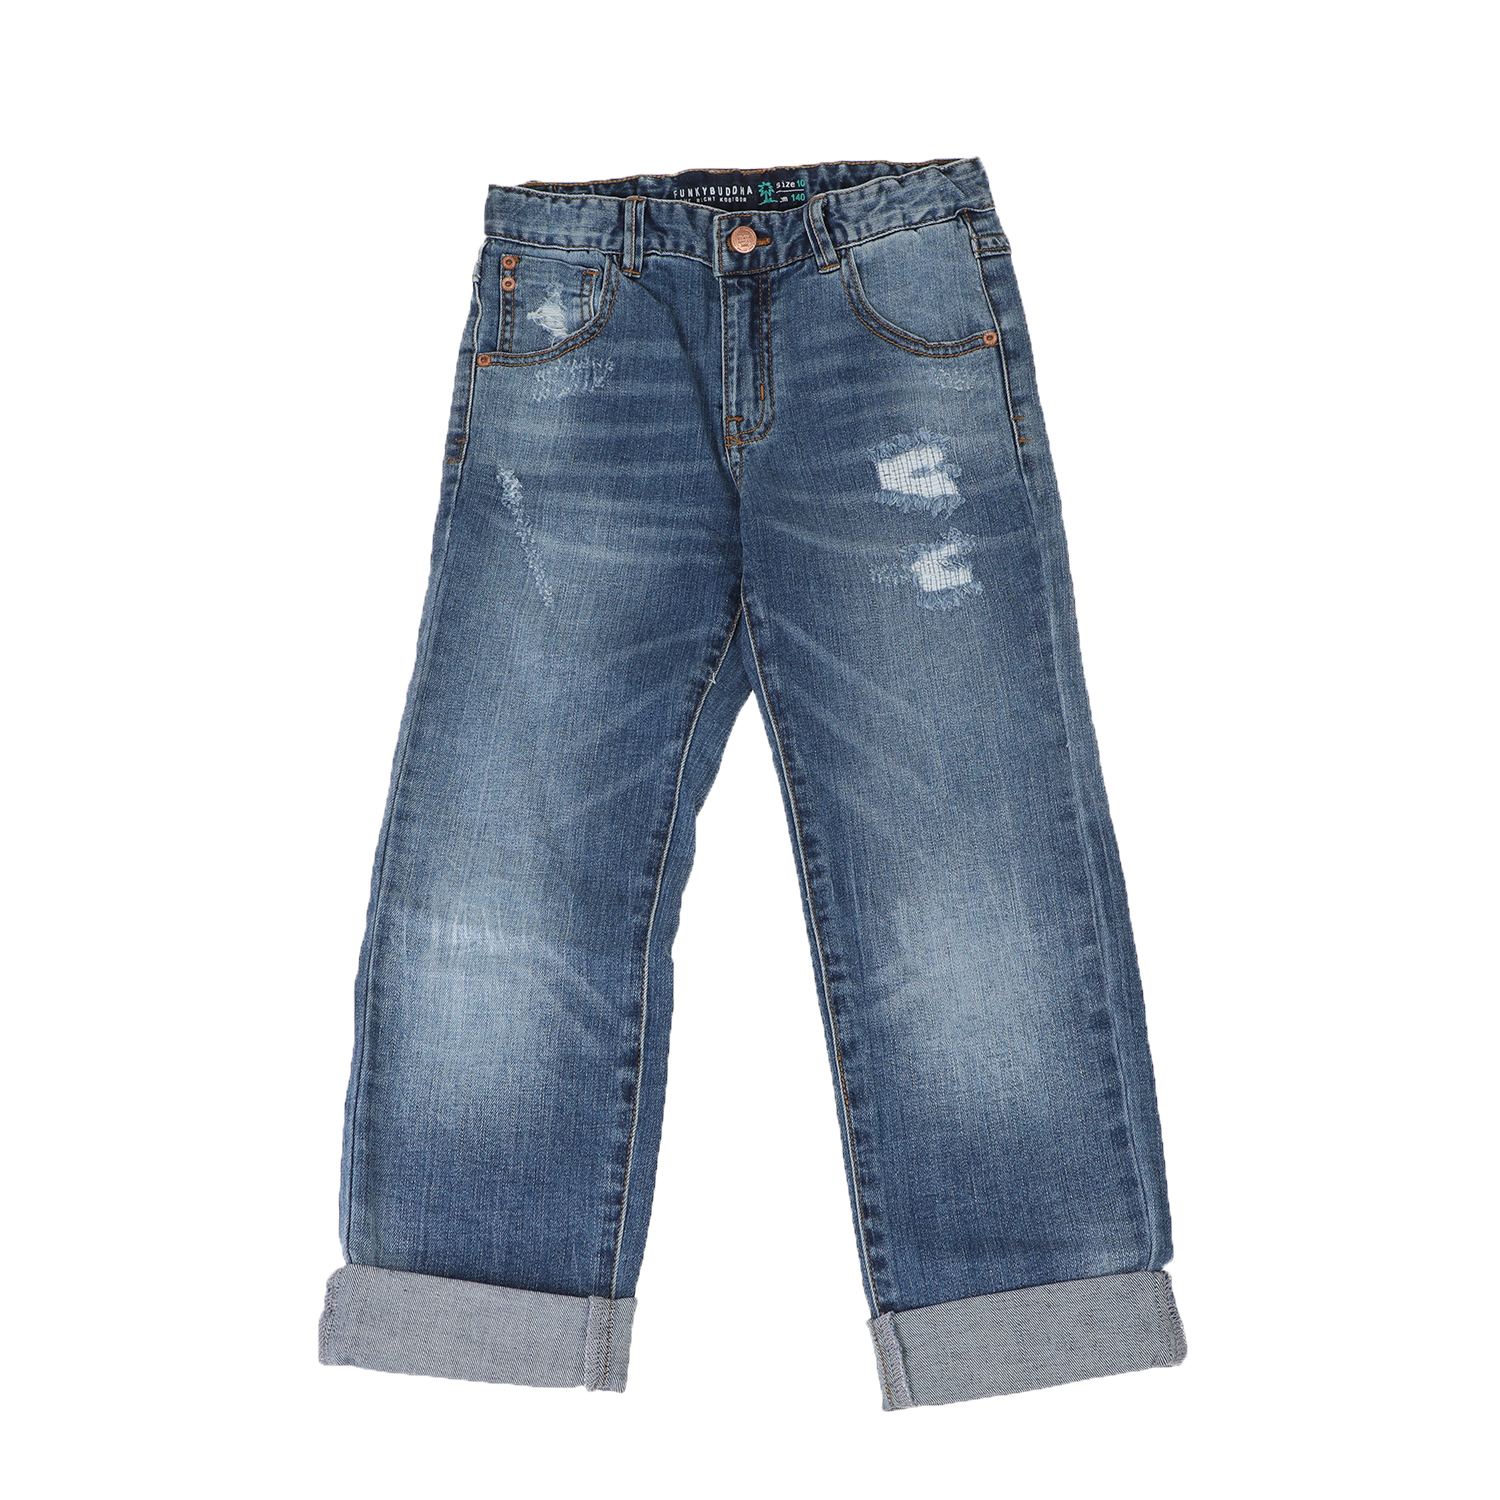 Παιδικά/Boys/Ρούχα/Παντελόνια FUNKY BUDDHA - Παιδικό jean παντελόνι FUNKY BUDDHA μπλε